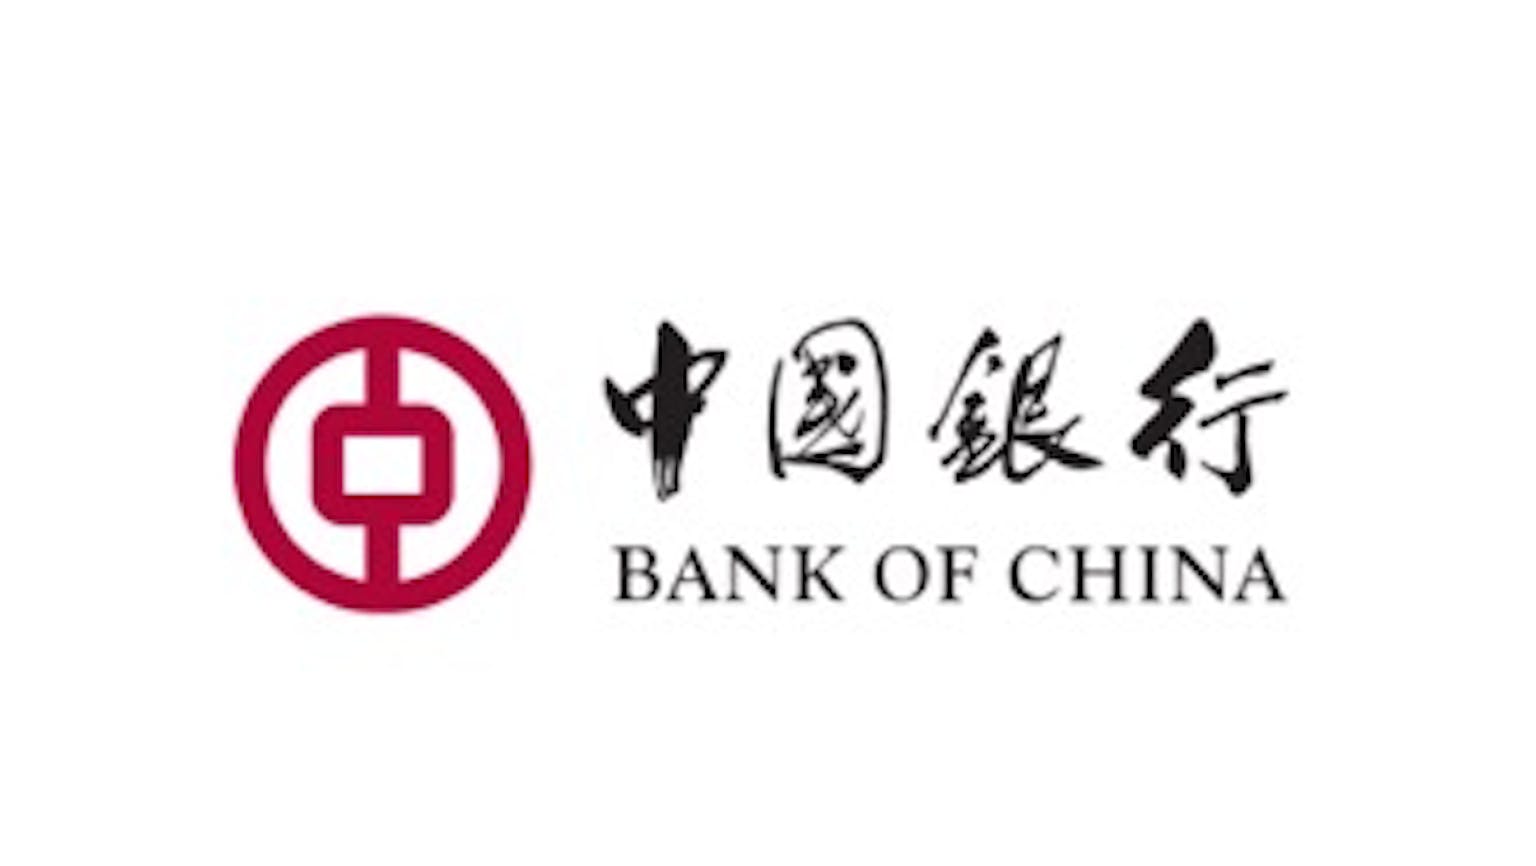 ธนาคารแห่งประเทศจีน